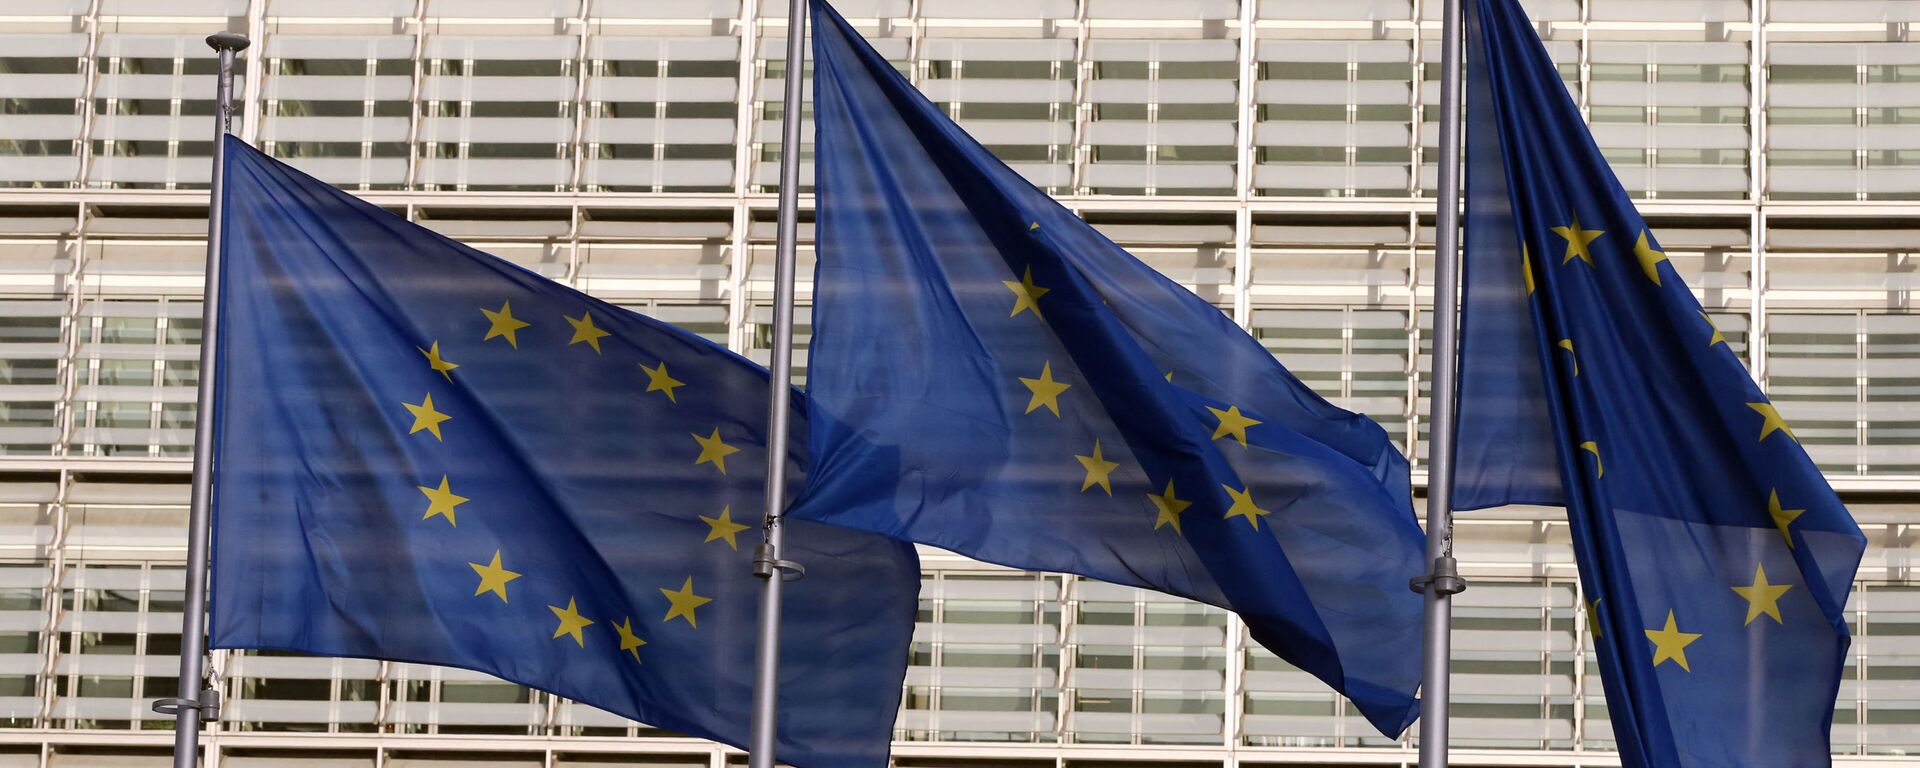 Флаги Европейского союза у штаб-квартиры Европейской комиссии в Брюсселе - Sputnik Литва, 1920, 27.07.2021